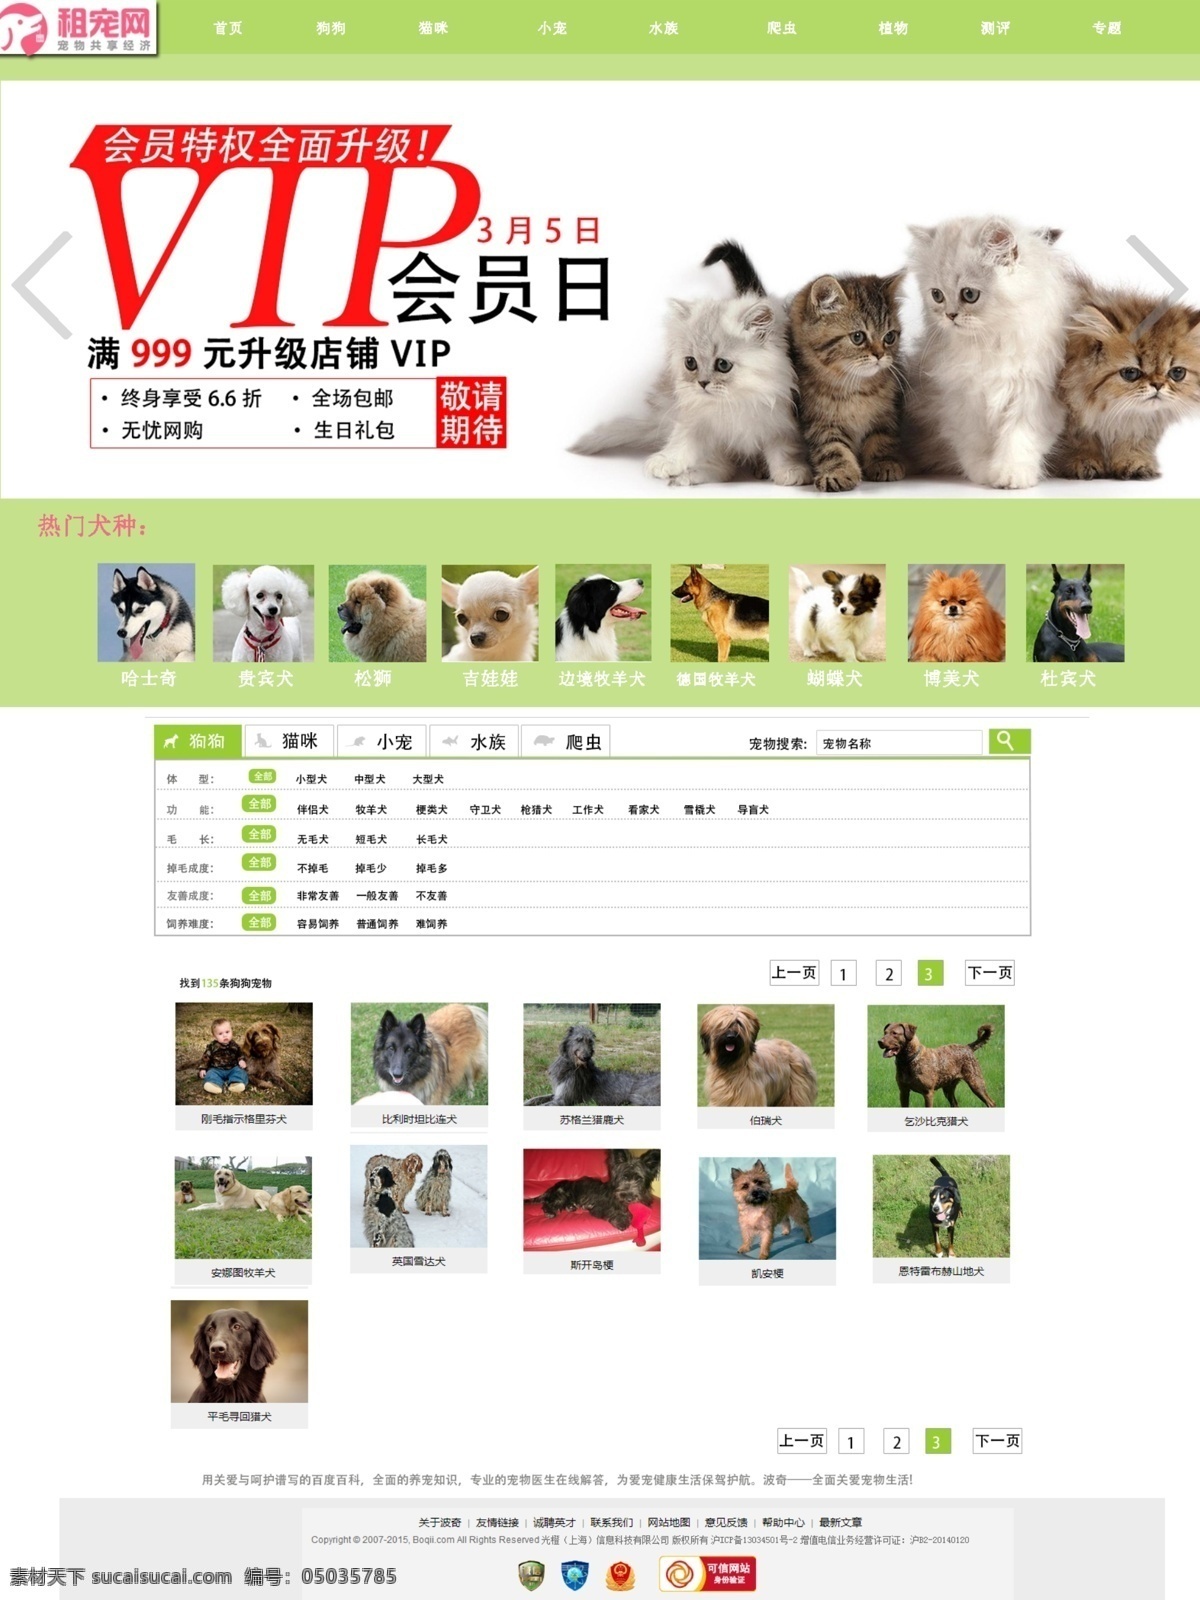 宠物 网站 网页 效果图 淡绿色背景 宠物网站 网页效果图 白色